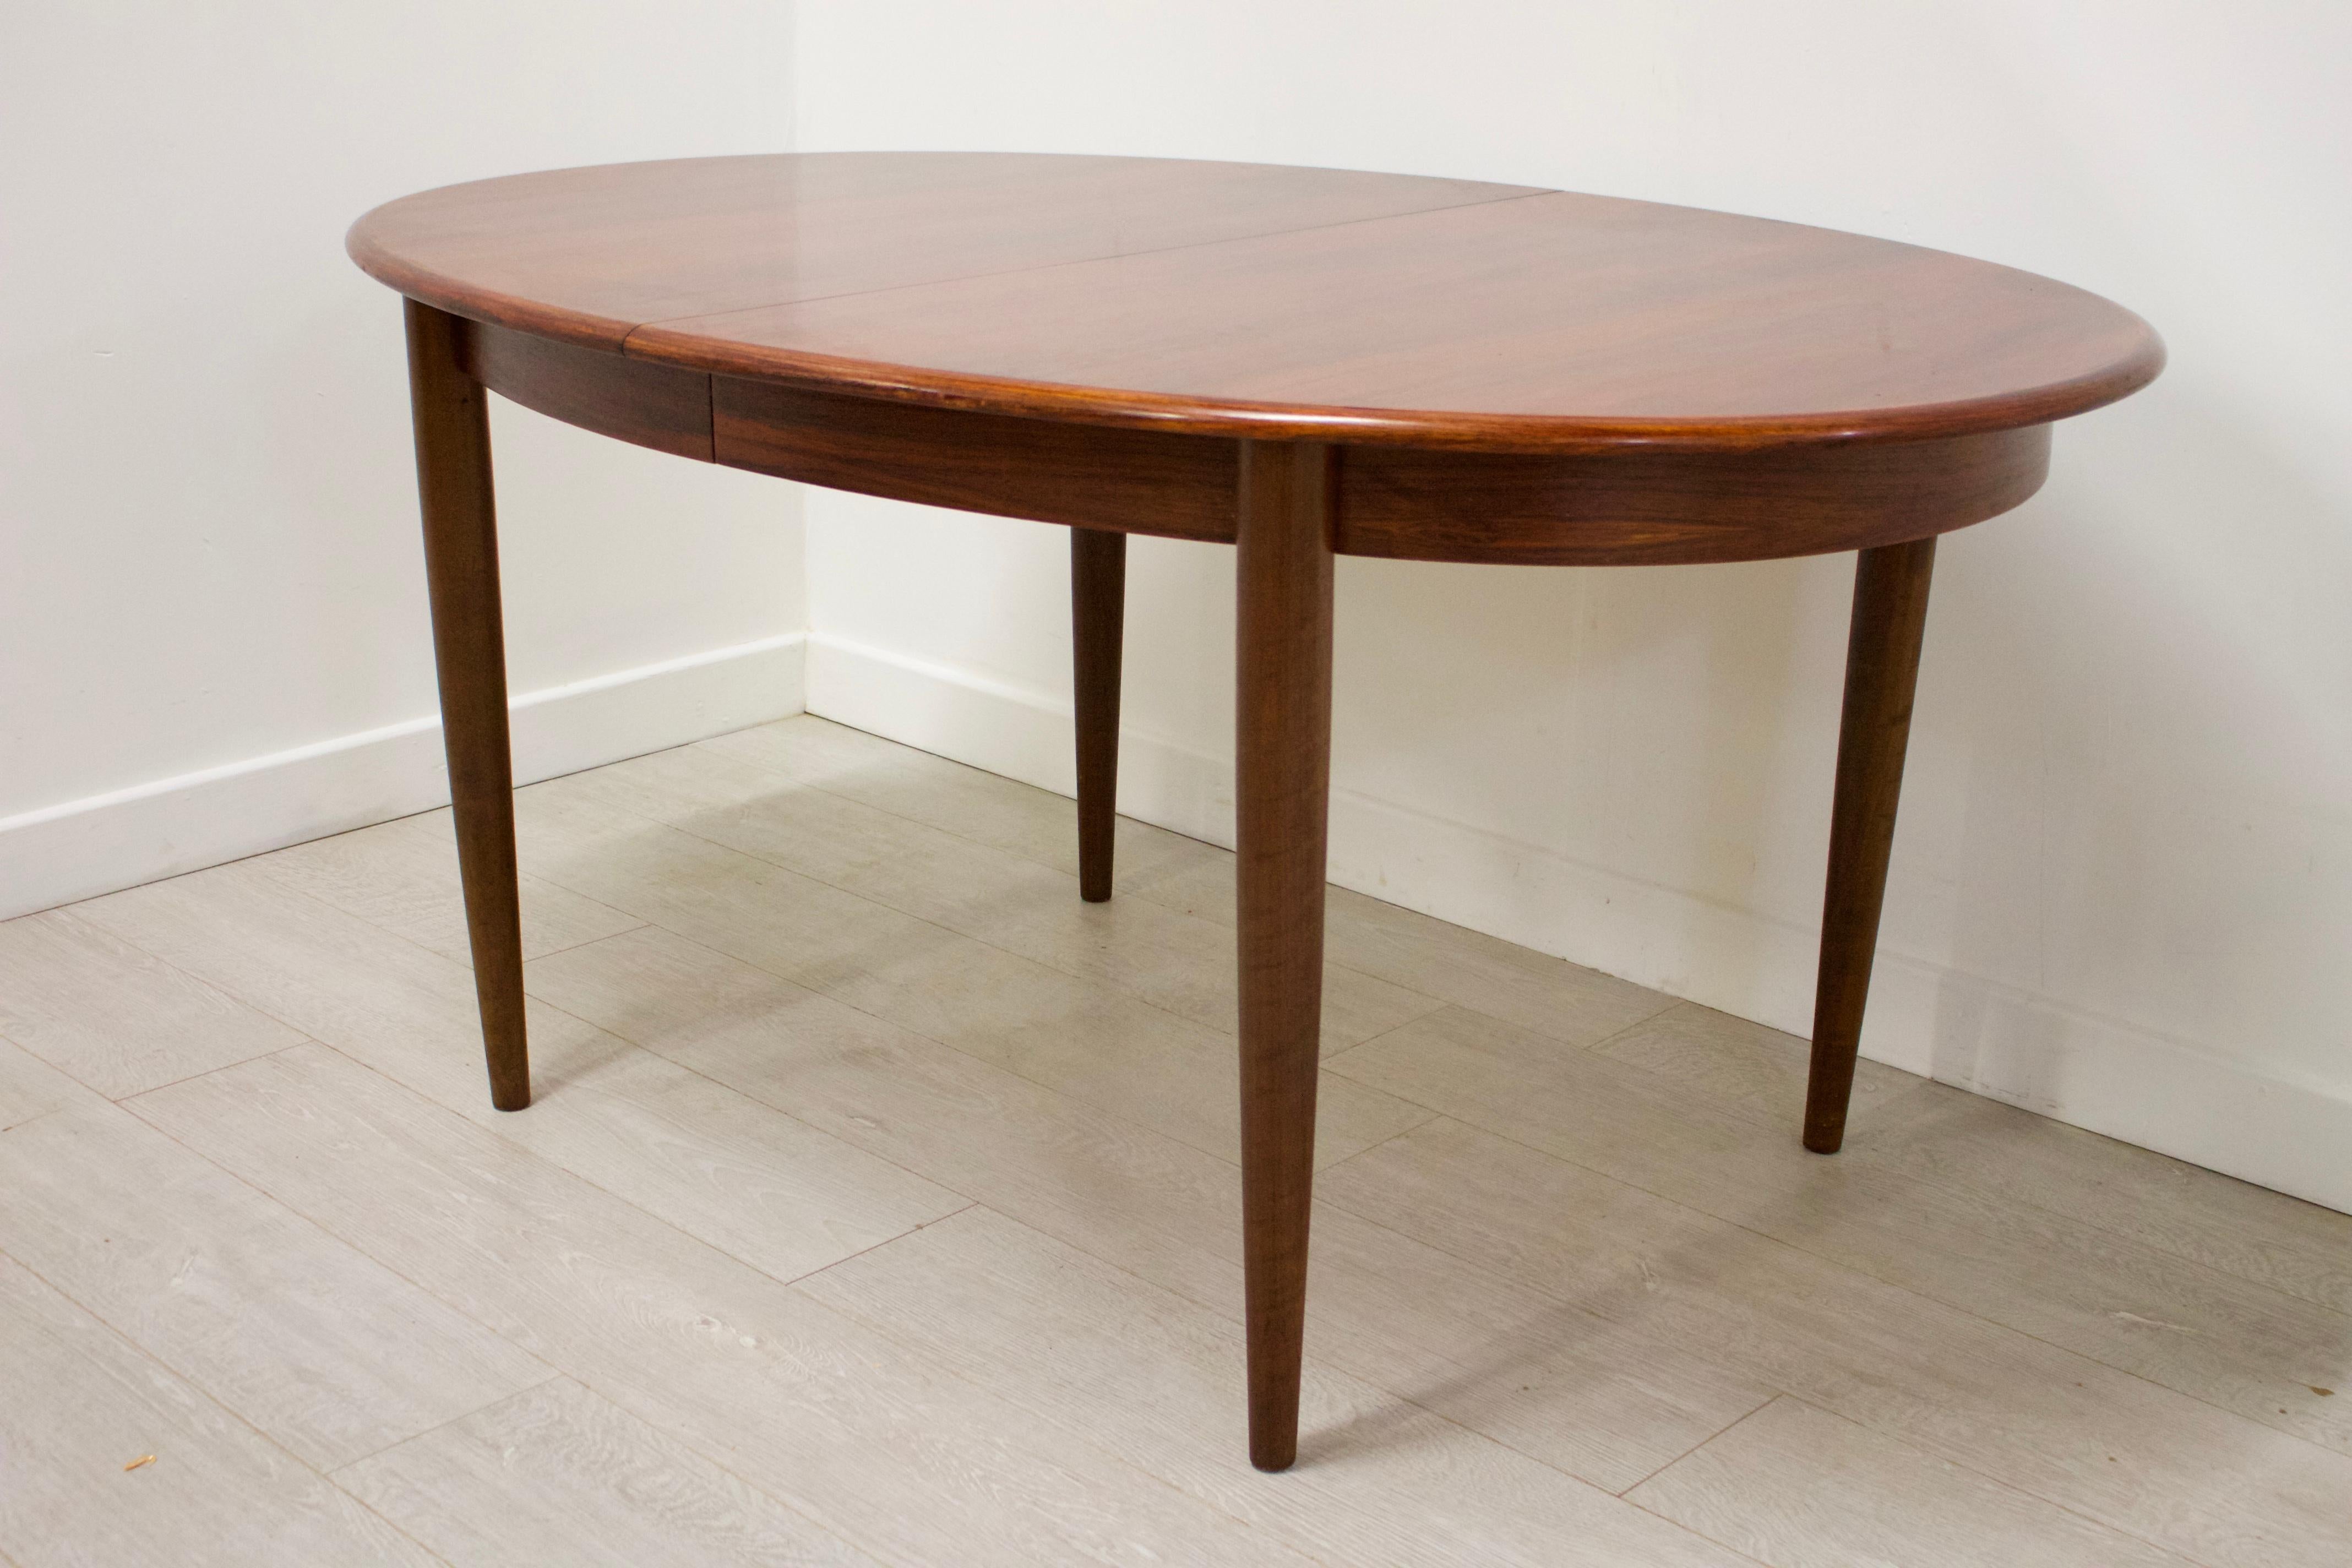 Veneer Midcentury Danish Rosewood Extending Table by Gudme Møbelfabrik For Sale